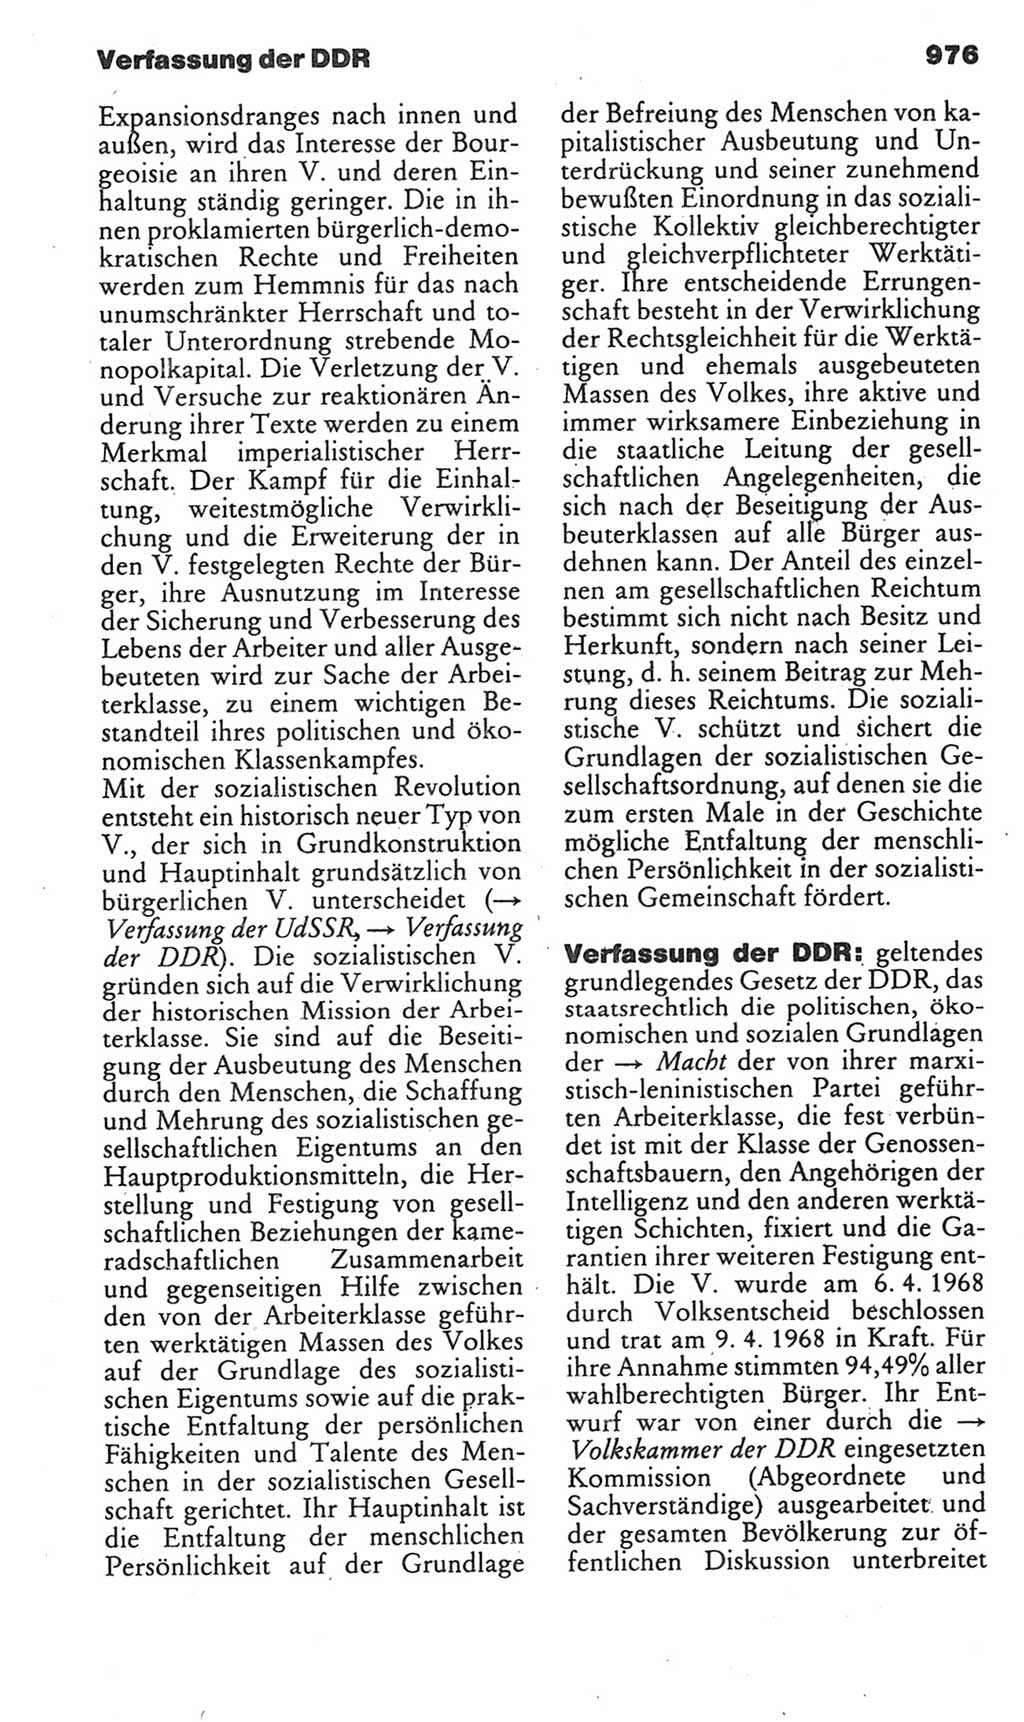 Kleines politisches Wörterbuch [Deutsche Demokratische Republik (DDR)] 1985, Seite 976 (Kl. pol. Wb. DDR 1985, S. 976)